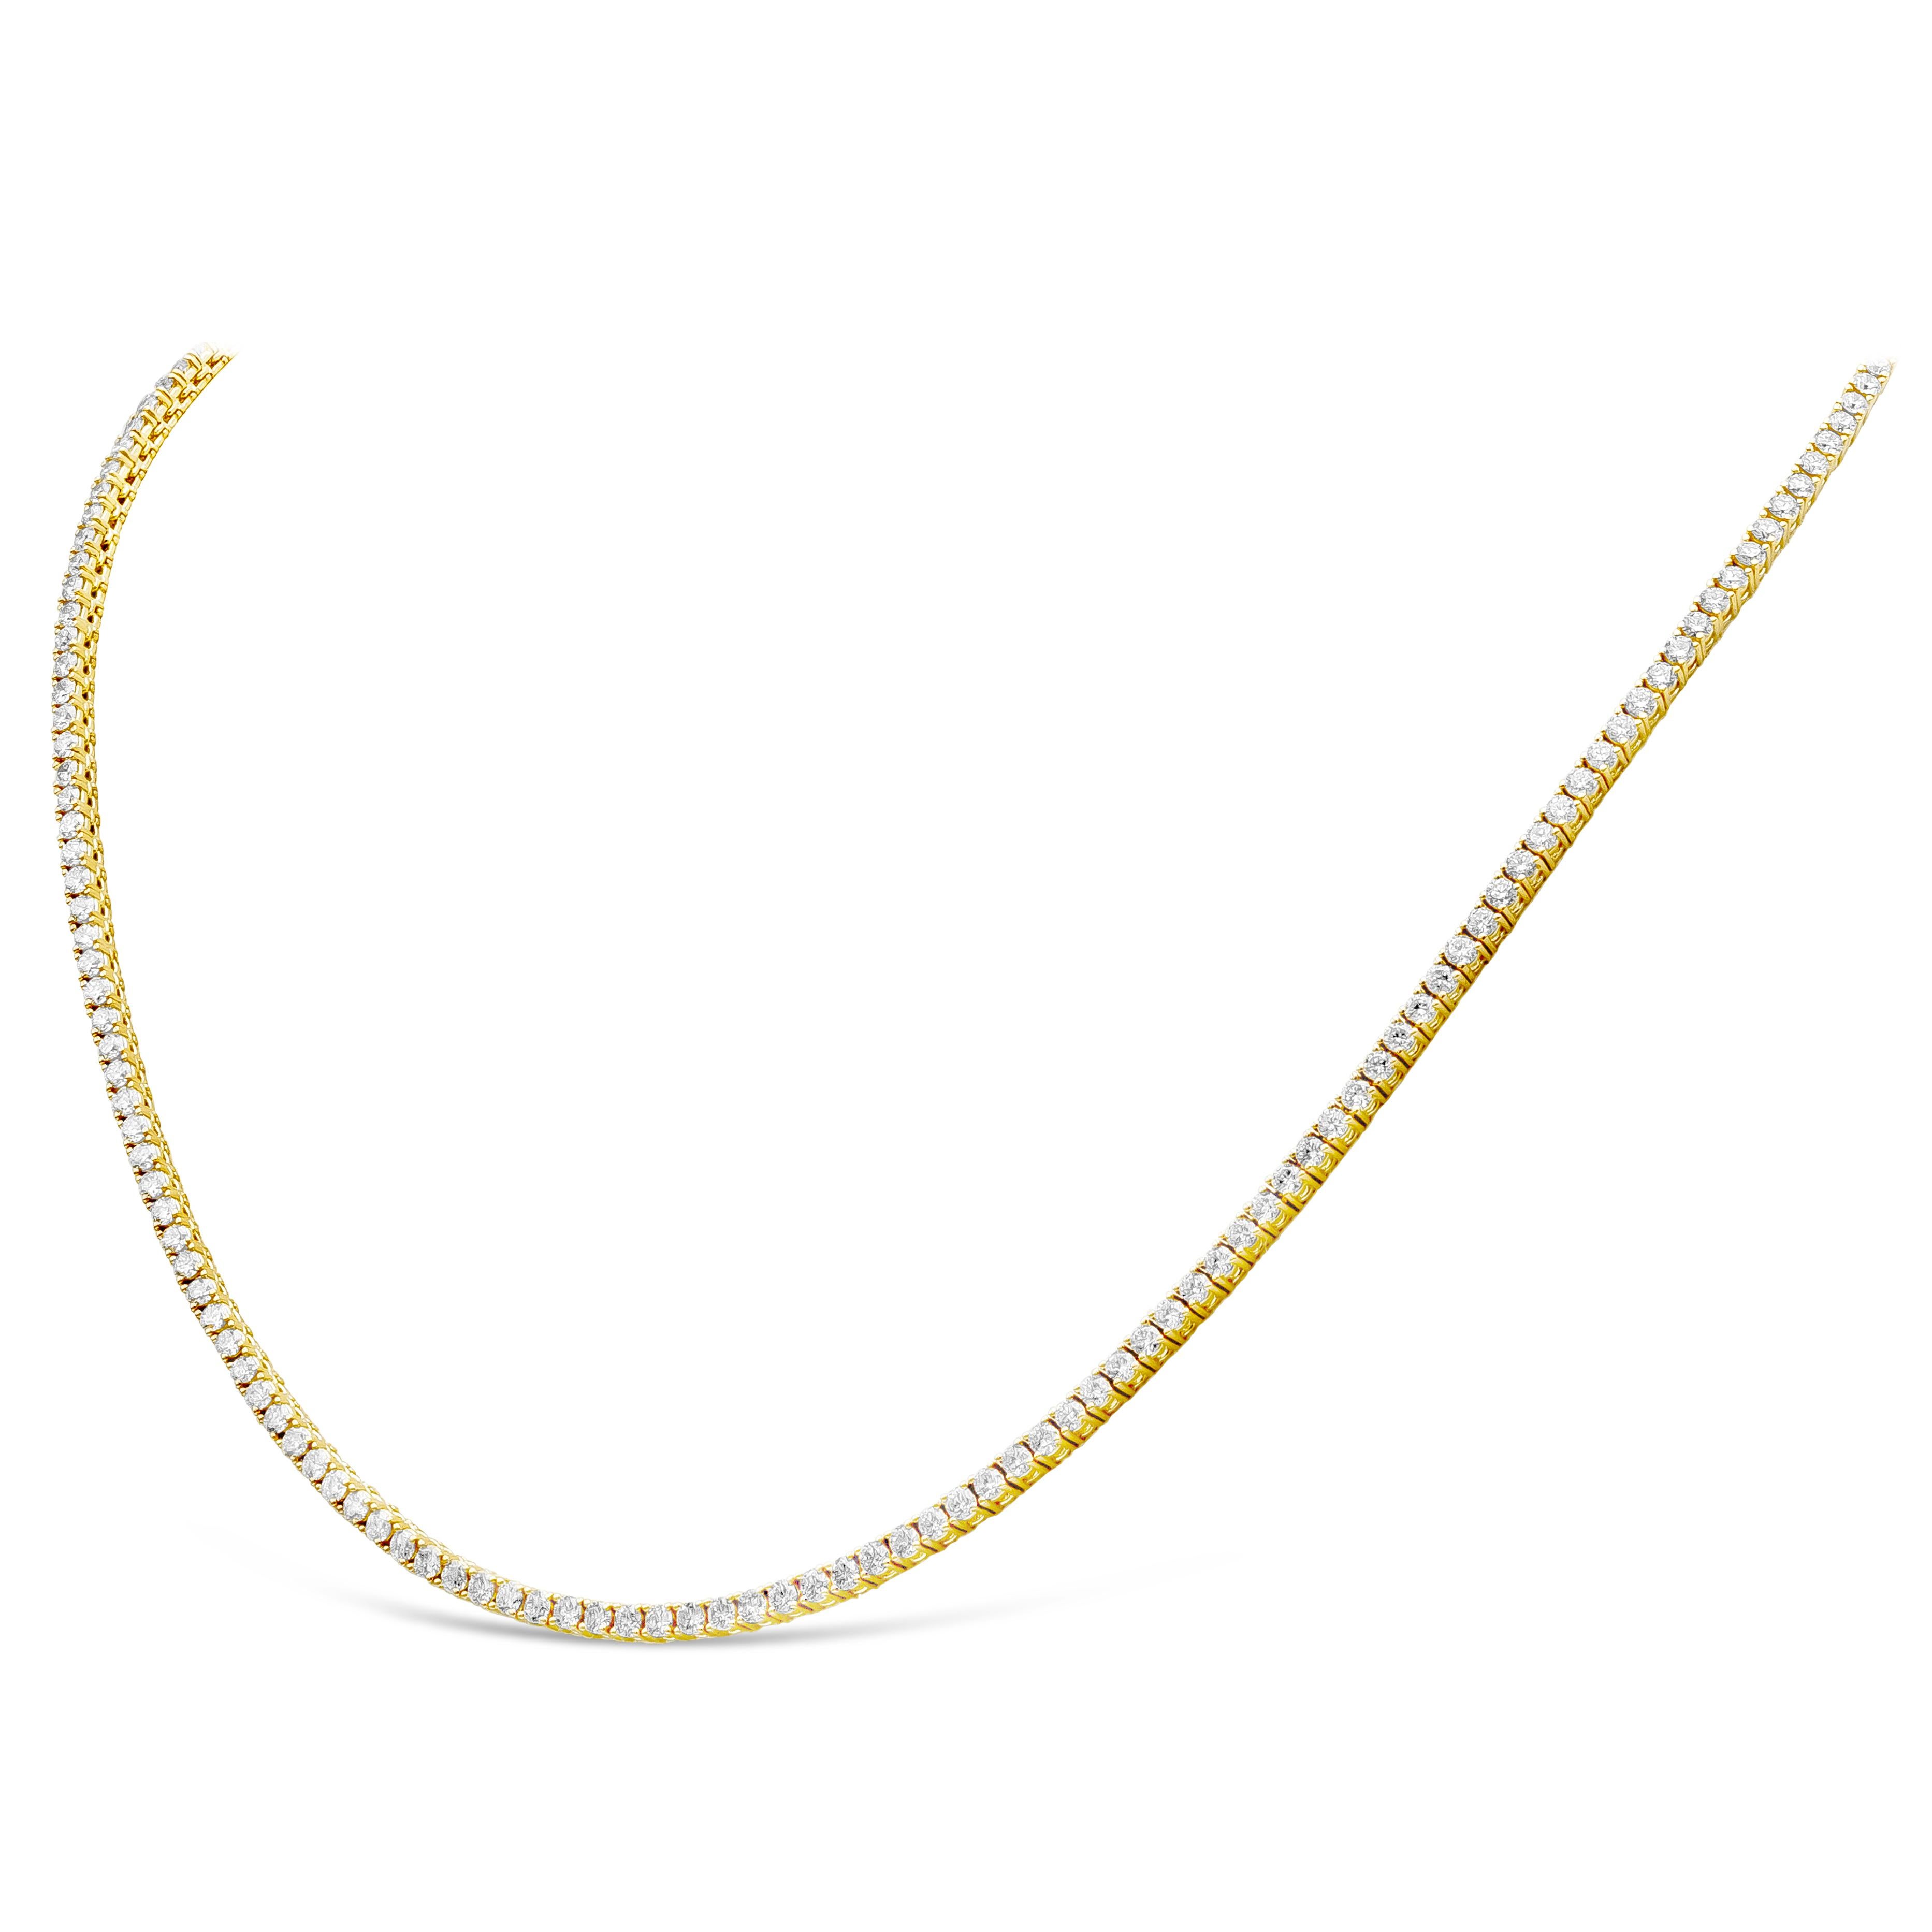 Un collier de tennis classique mettant en valeur 192 diamants ronds de taille brillant, sertis dans une monture en or jaune 18 carats poli. Les diamants pèsent 7,52 carats au total et sont de couleur F et de pureté VS-SI.
18 pouces de